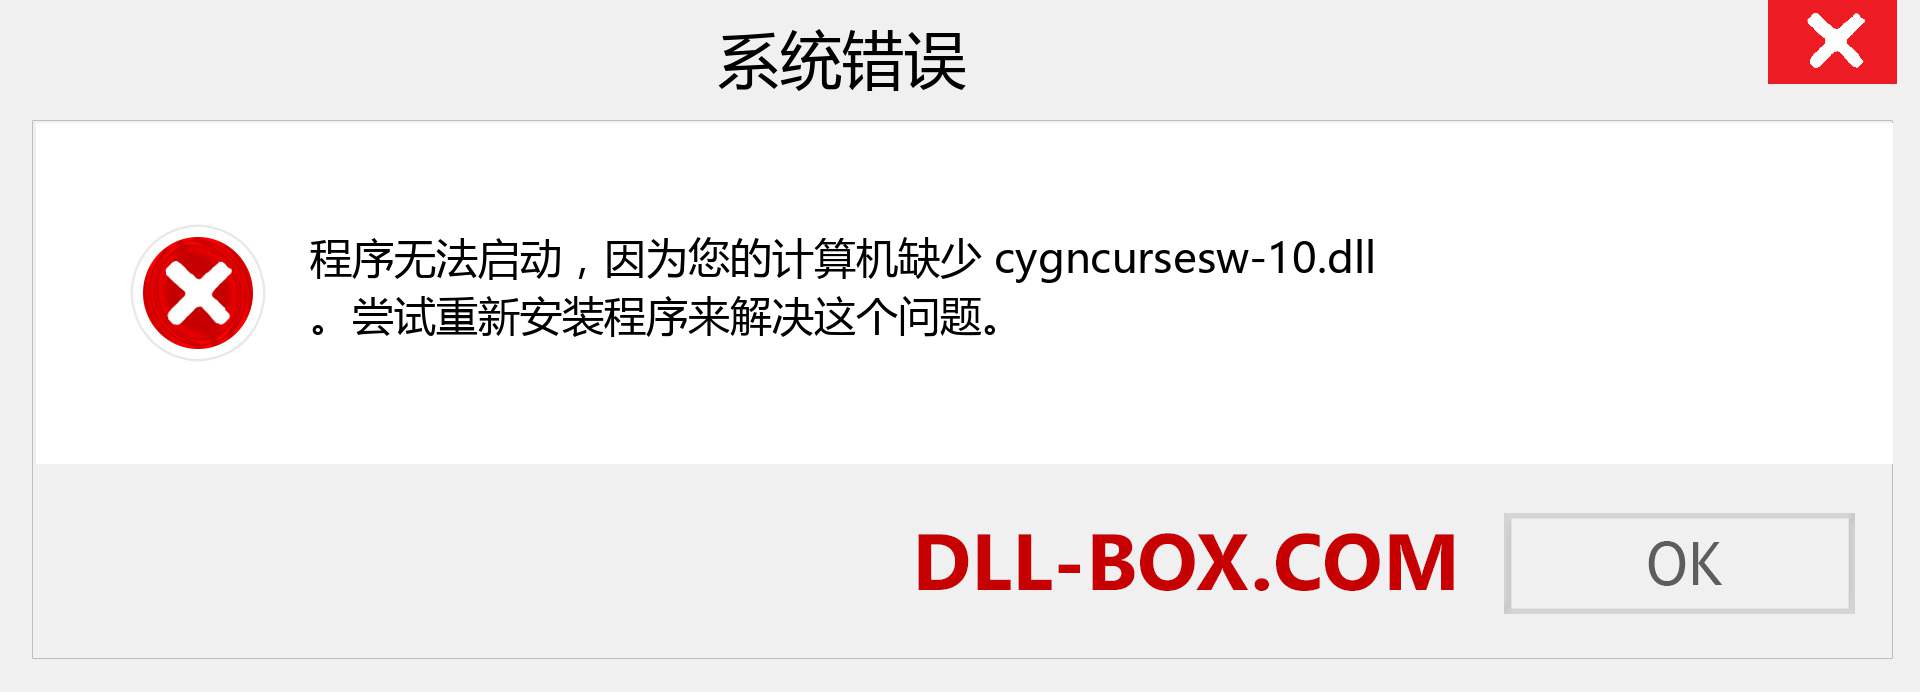 cygncursesw-10.dll 文件丢失？。 适用于 Windows 7、8、10 的下载 - 修复 Windows、照片、图像上的 cygncursesw-10 dll 丢失错误